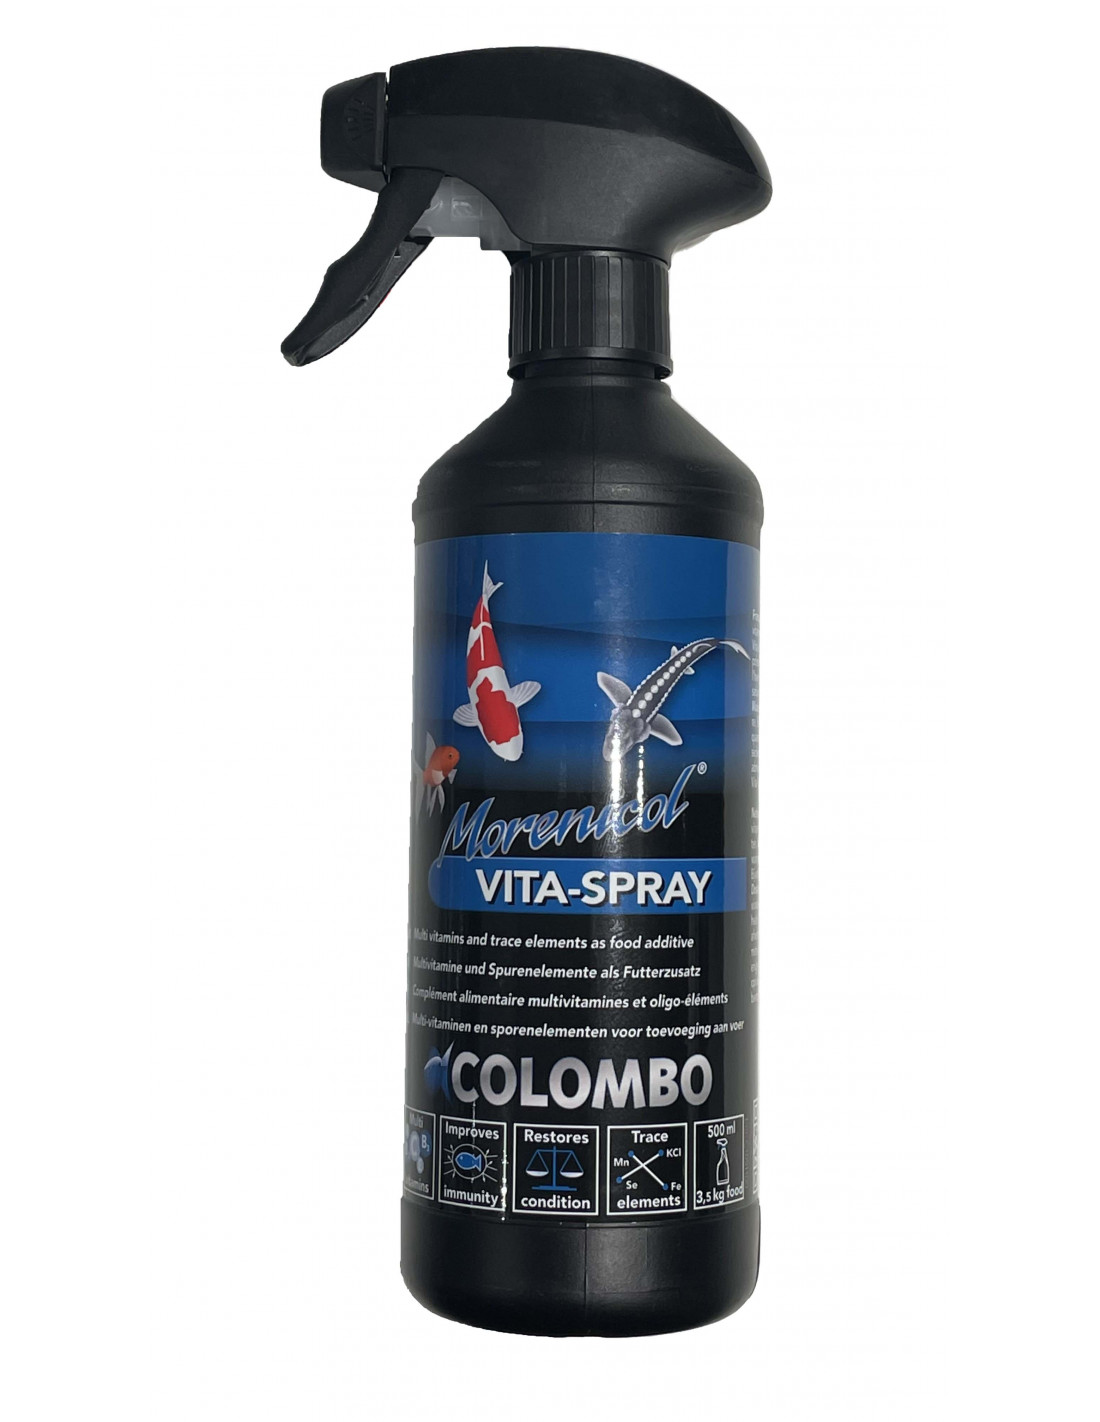 Morenicol Vita Spray Colombo